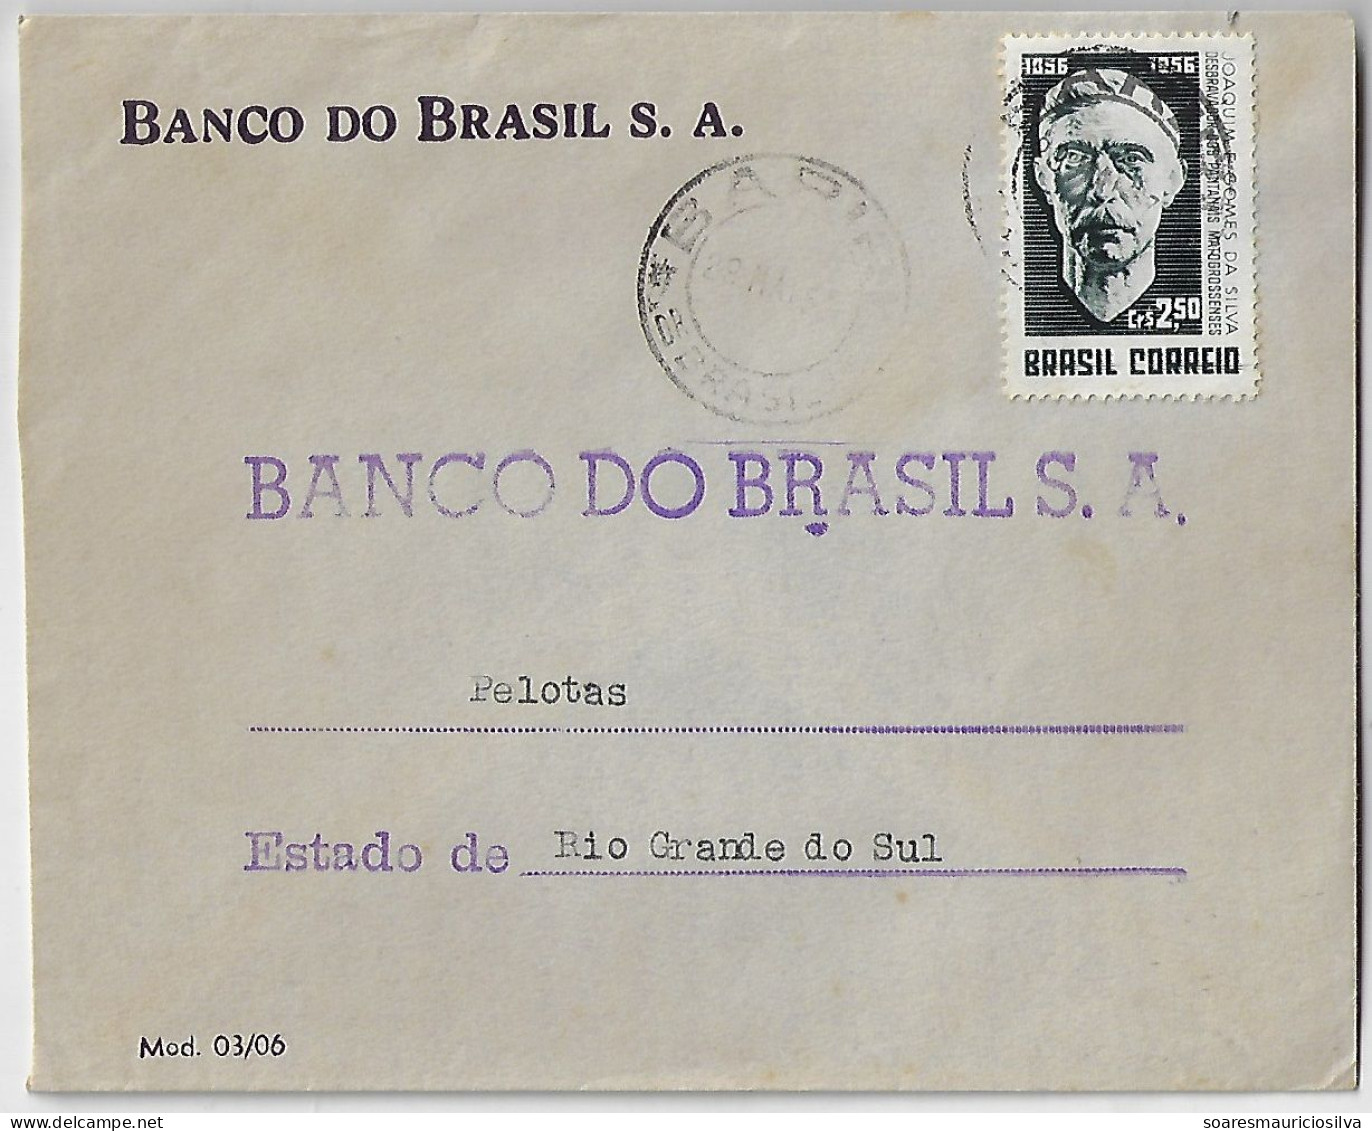 1956 Bank Of Brazil Cover Sent From São Paulo Agency Bariri To Pelotas Stamp Joaquim Eugênio Gomes Da Silva - Covers & Documents